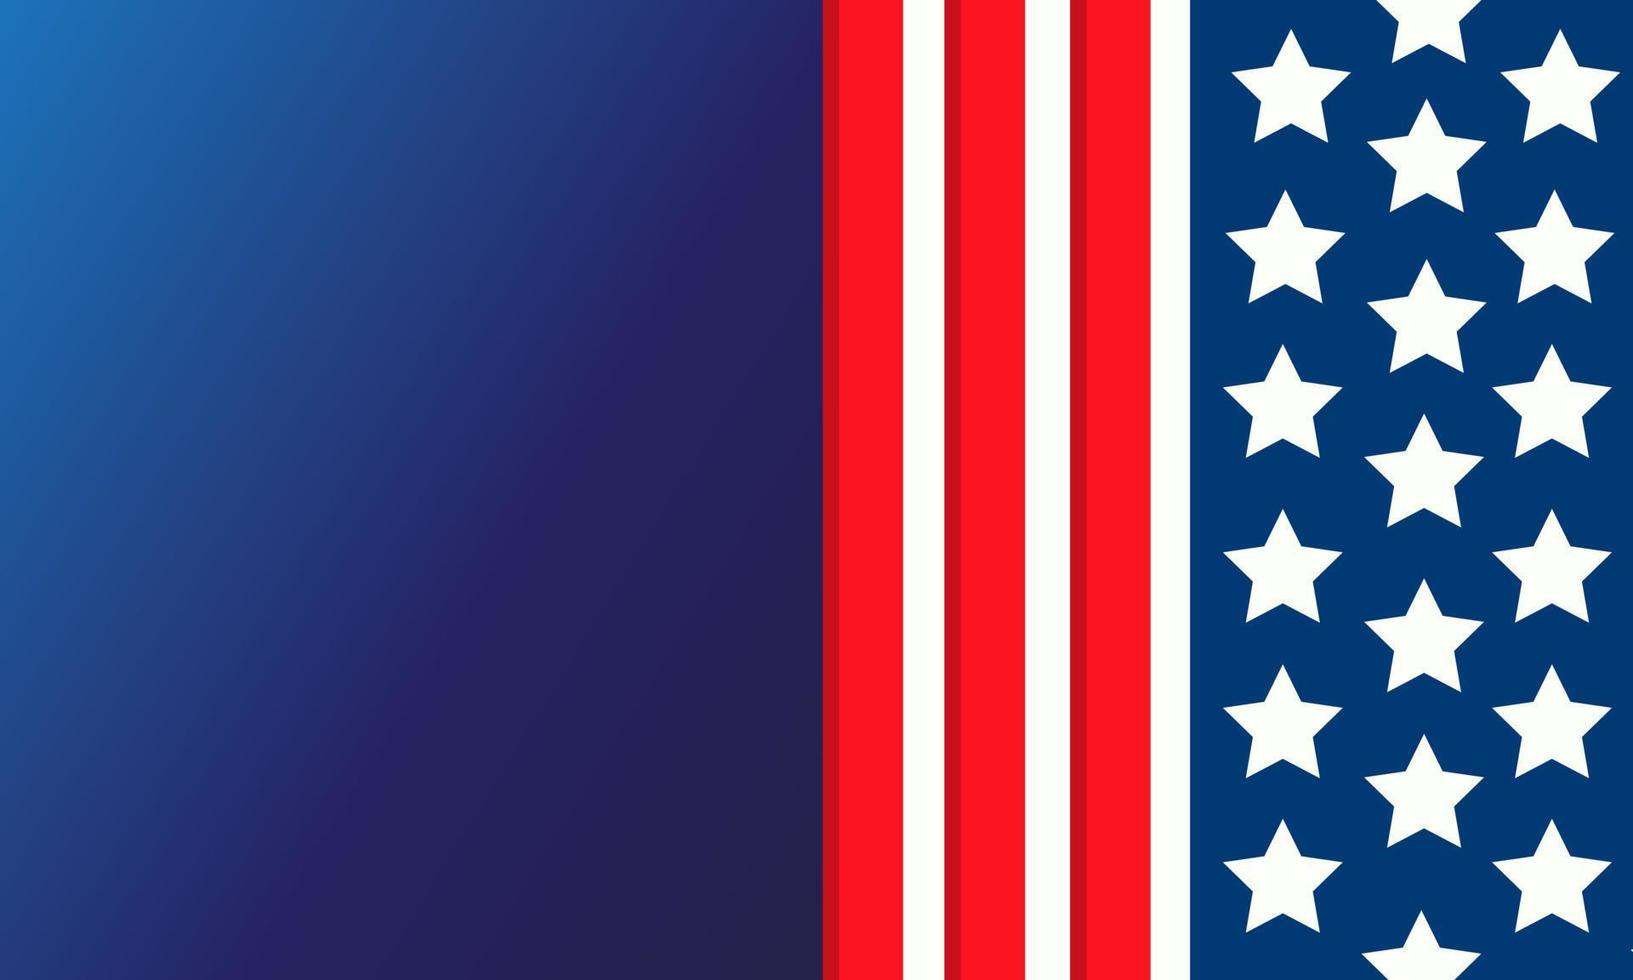 amerikanischer usa-flaggenstil, sternenbanner, vereinigte staaten von amerika auf blauem hintergrund vektor